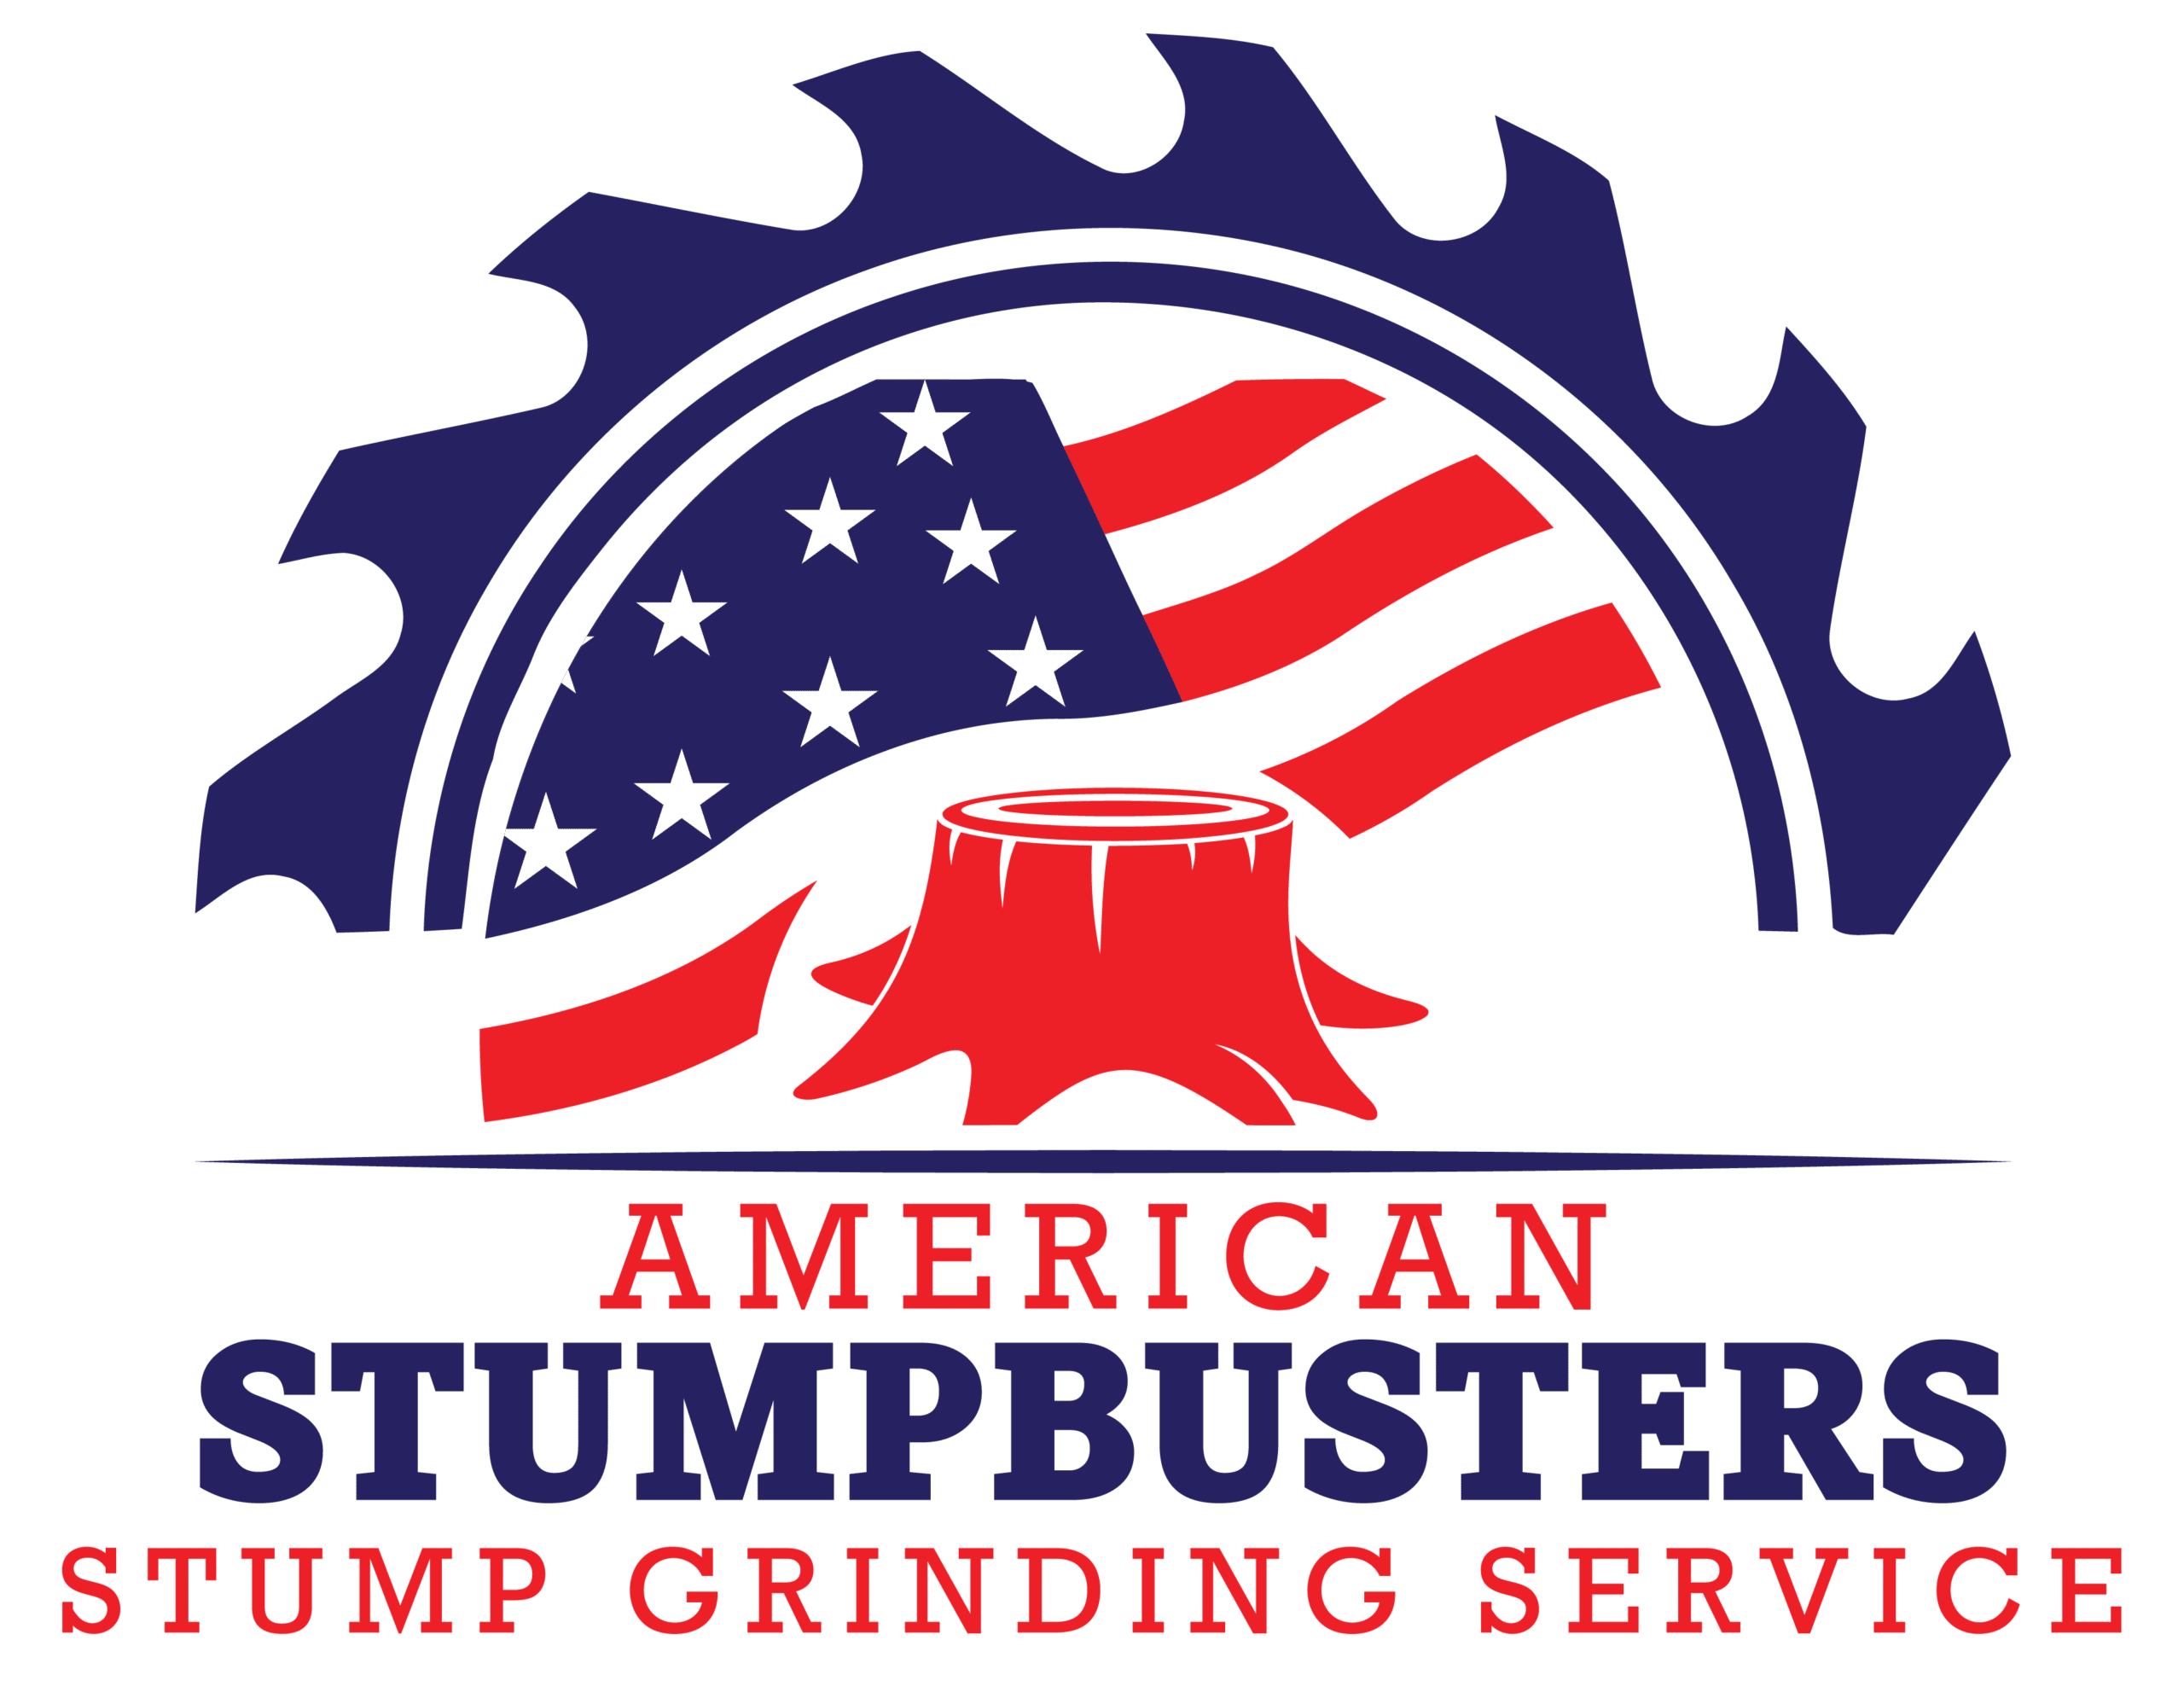 American Stumpbusters